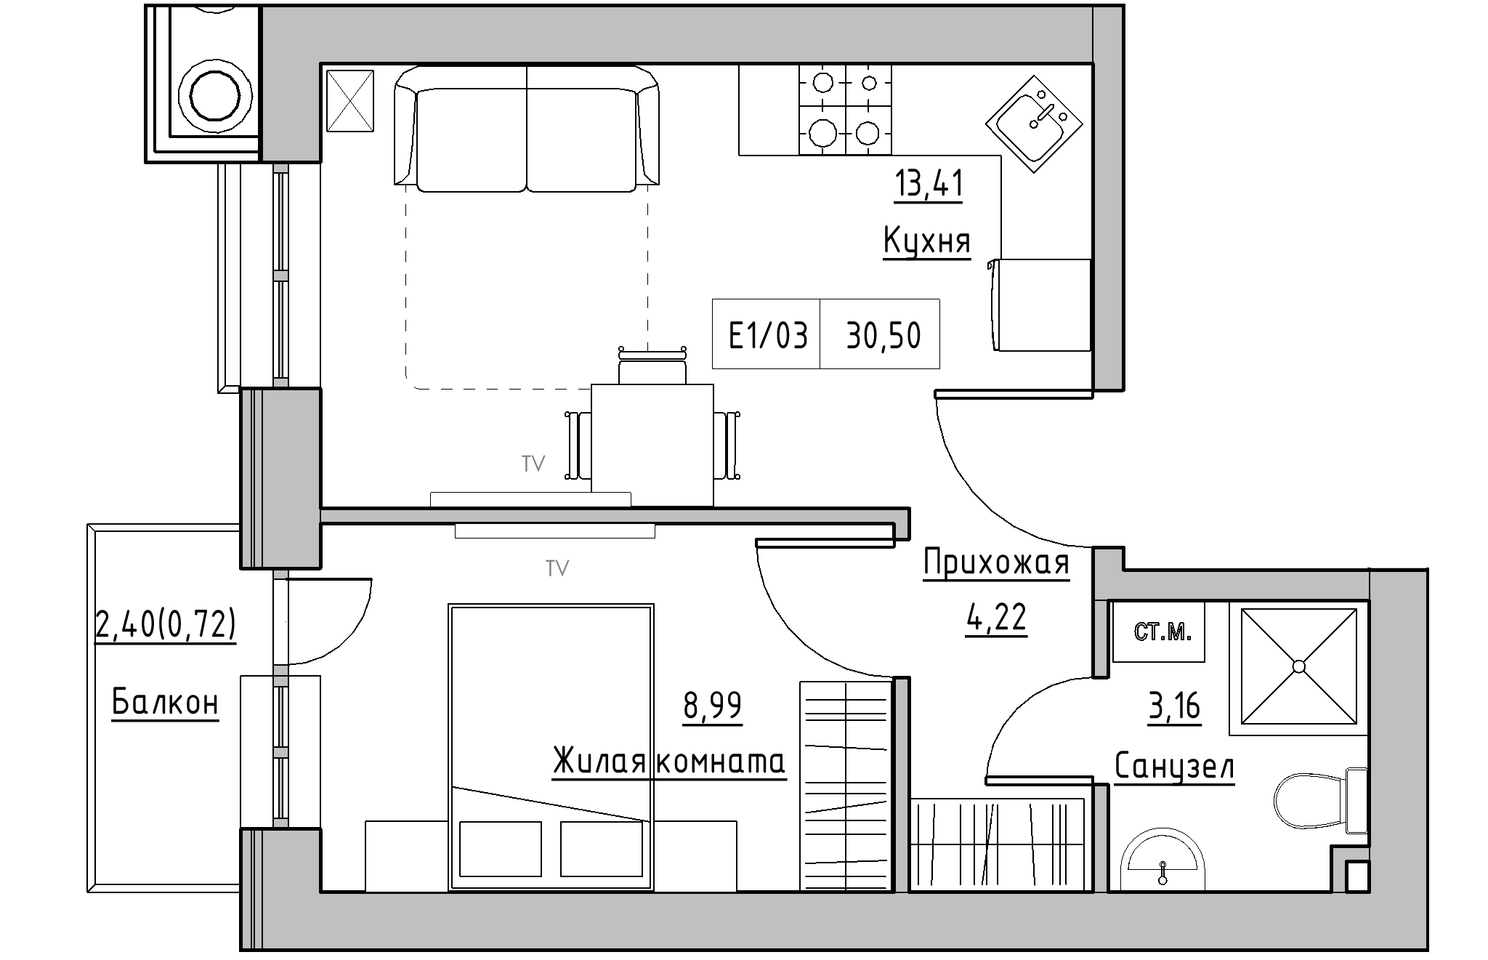 Планування 1-к квартира площею 30.5м2, KS-010-05/0015.